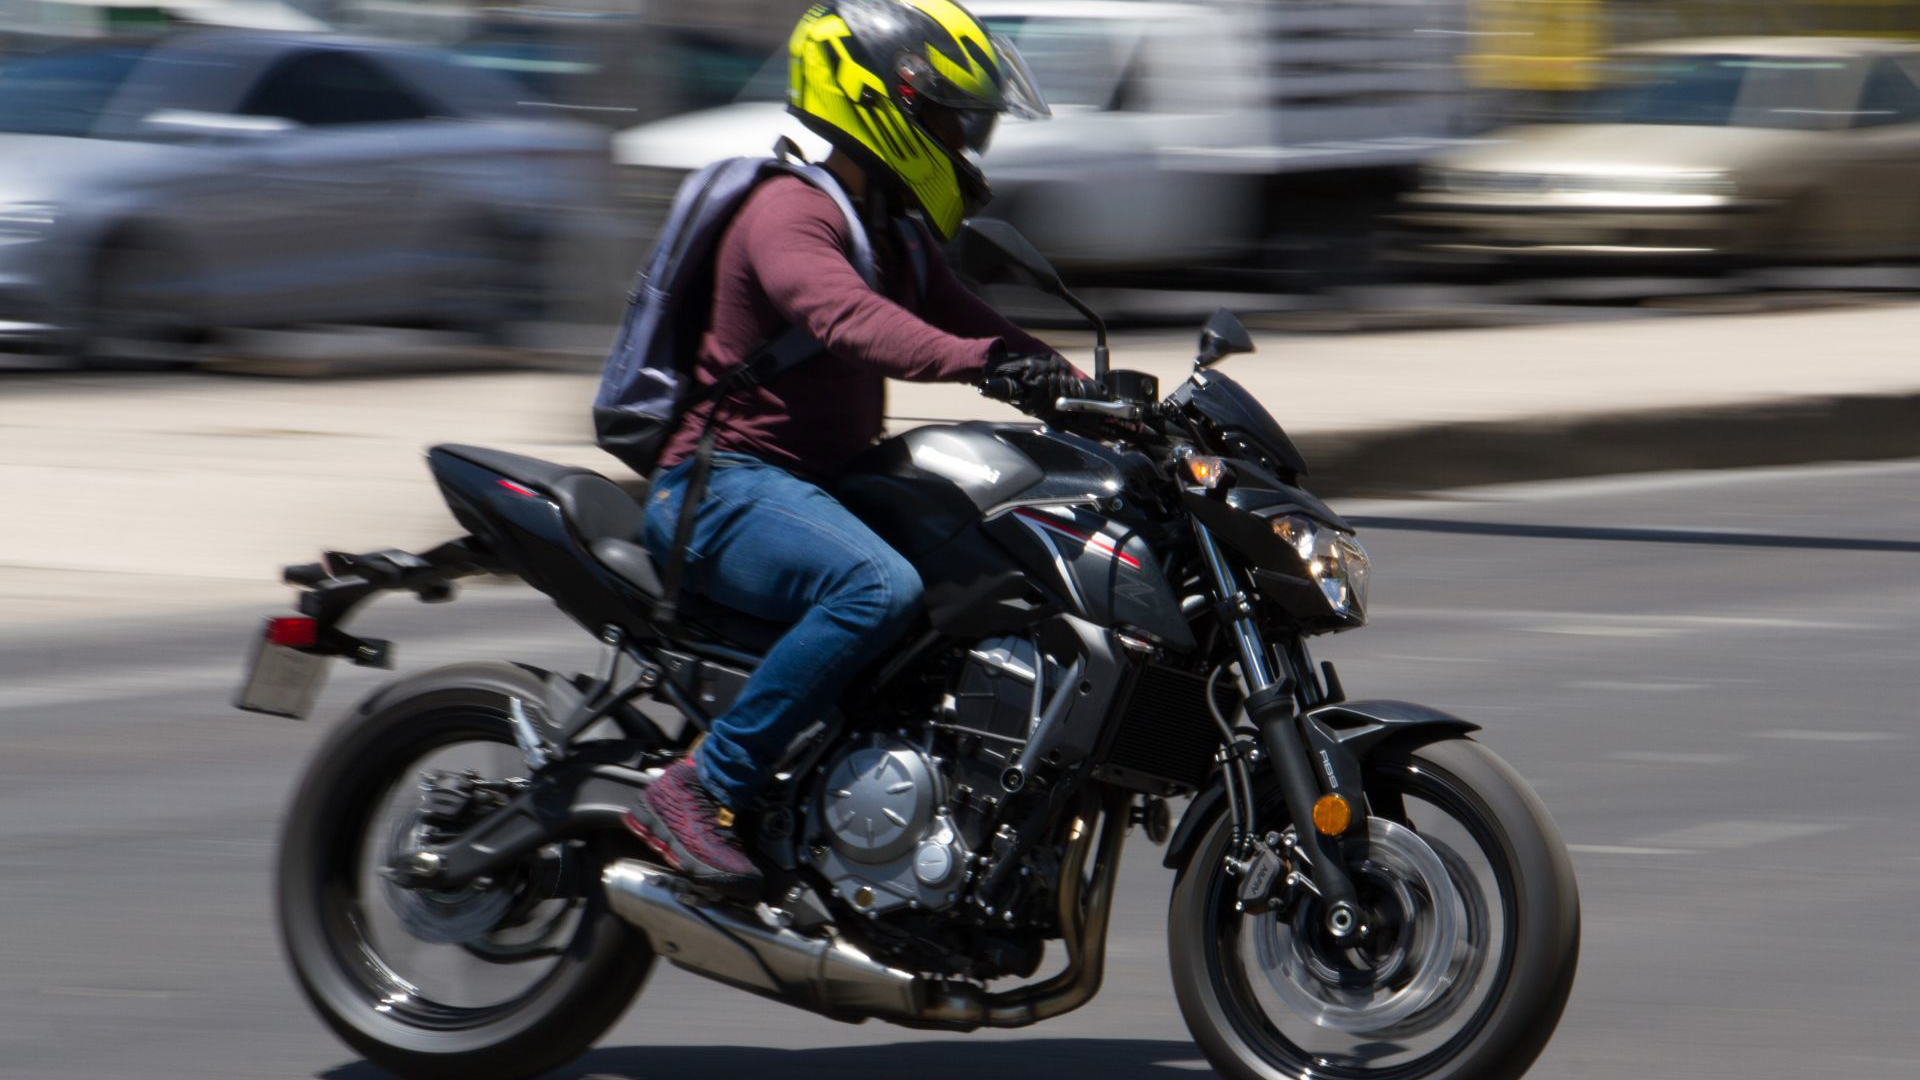 En 2023, la SSC infraccionó a más de 142 mil motociclistas por infringir reglamento de tránsito